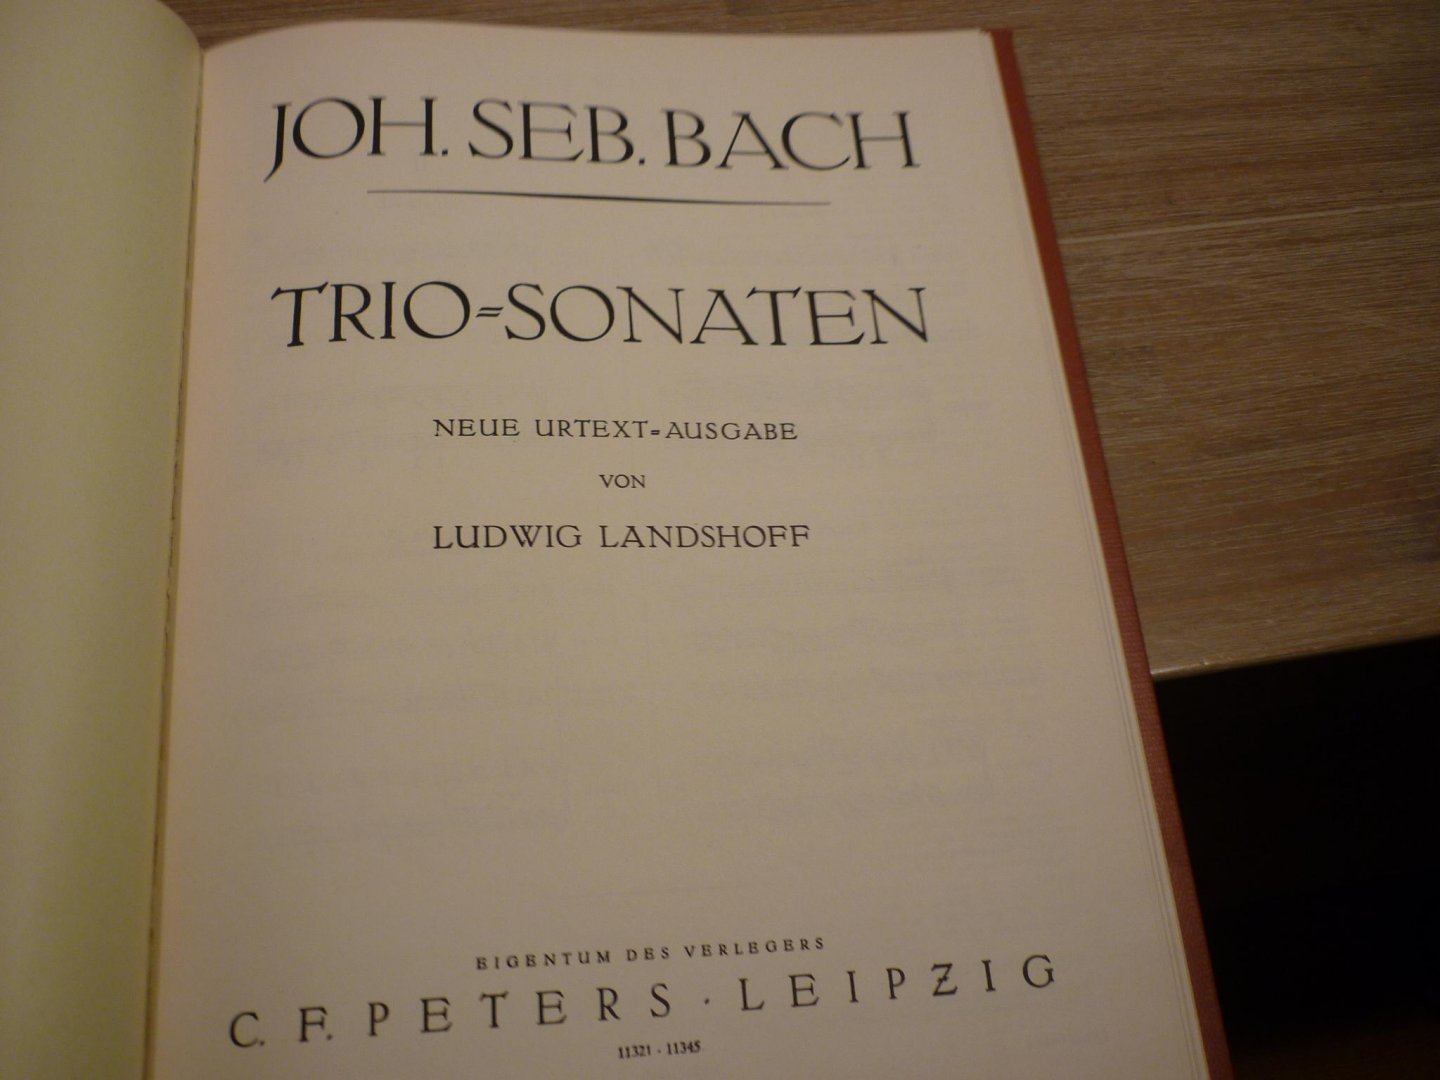 Bach; J. S. (1685-1750) - Trio Sonaten I  //  Trio Sonaten II  (neue urtext-ausgabe von Ludwig Landshoff)